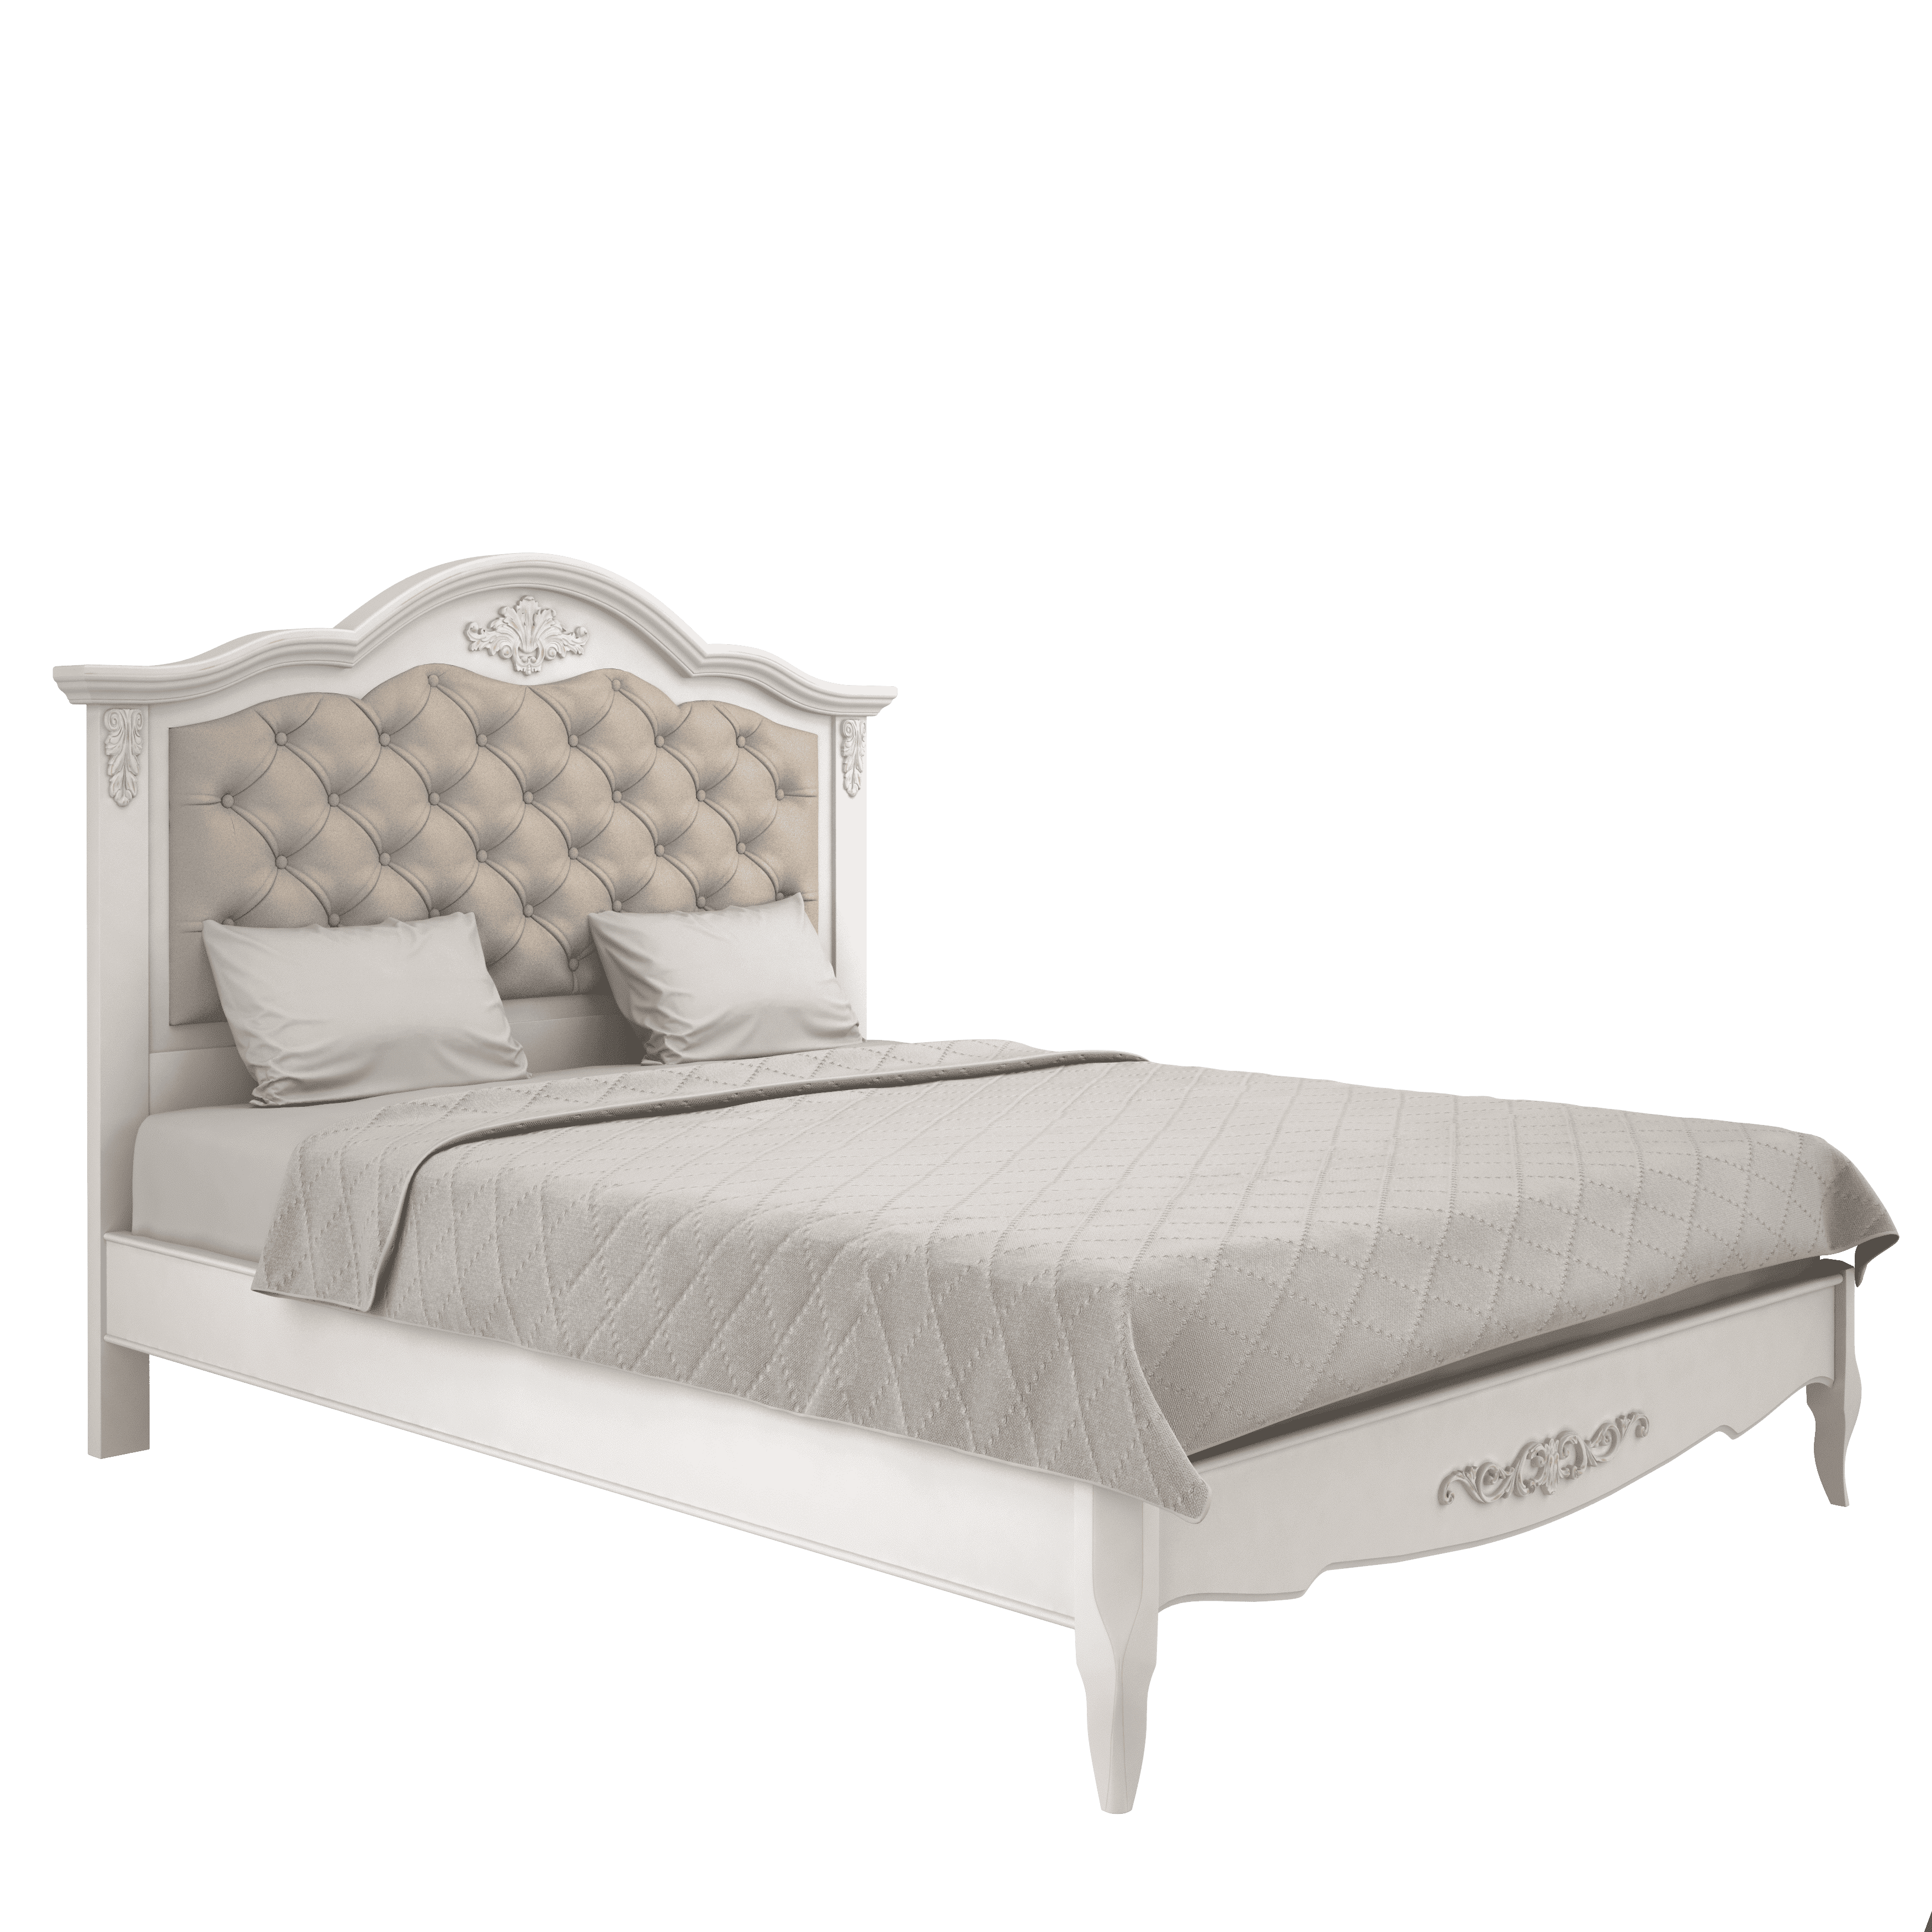 Кровать Aletan Provence, полуторная, 140x200 см, цвет: слоновая кость (B214)B214